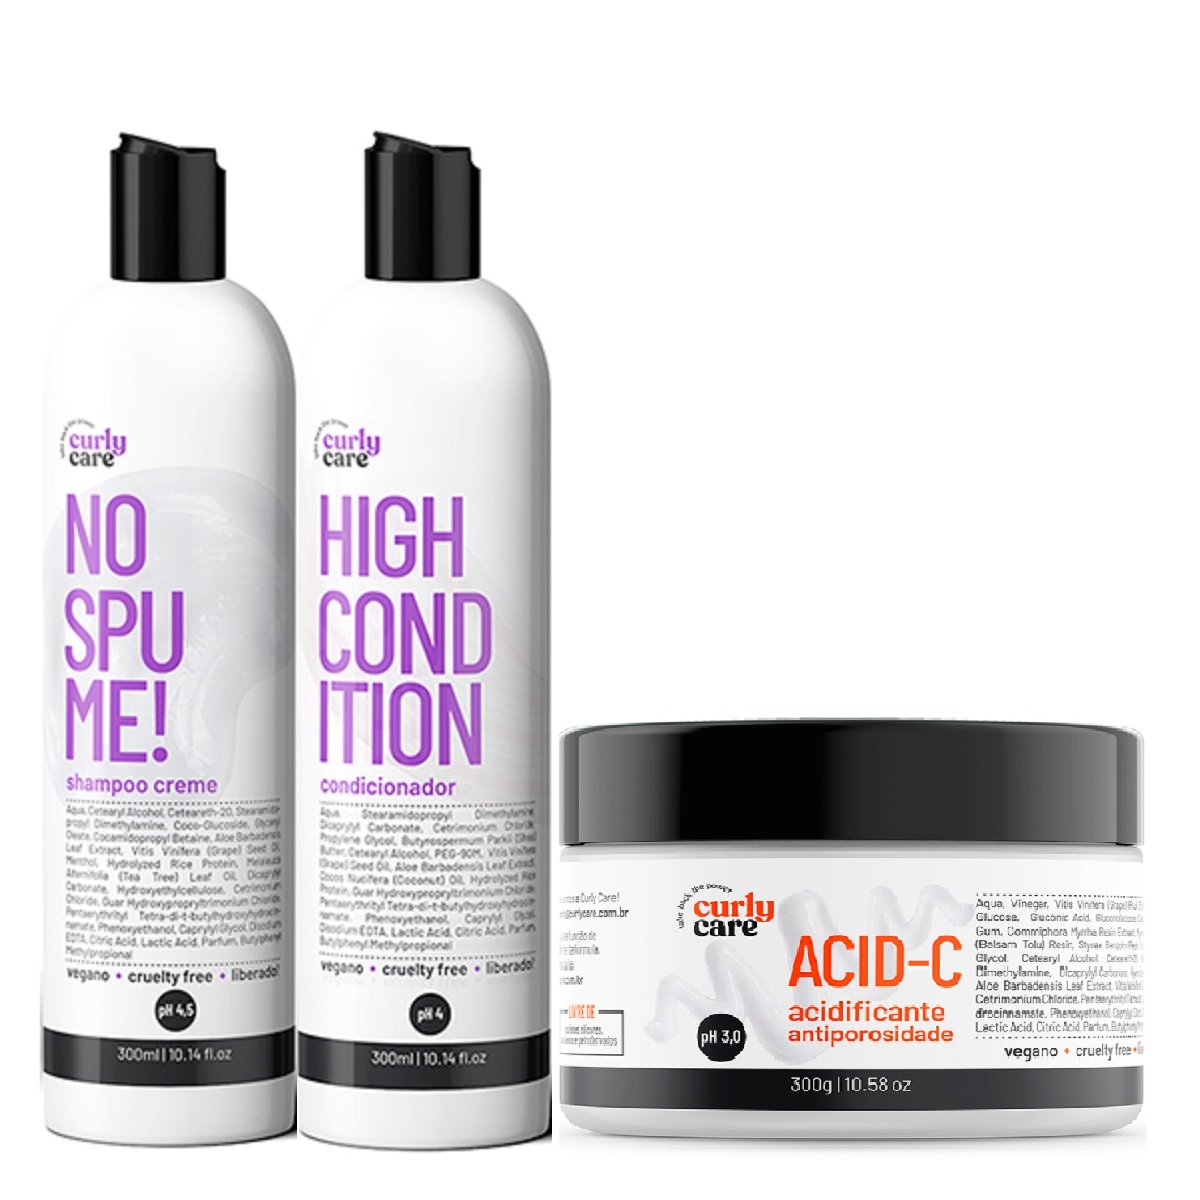 Kit Curly Care Shampoo, Condicionador E Acid-c (3 Itens)